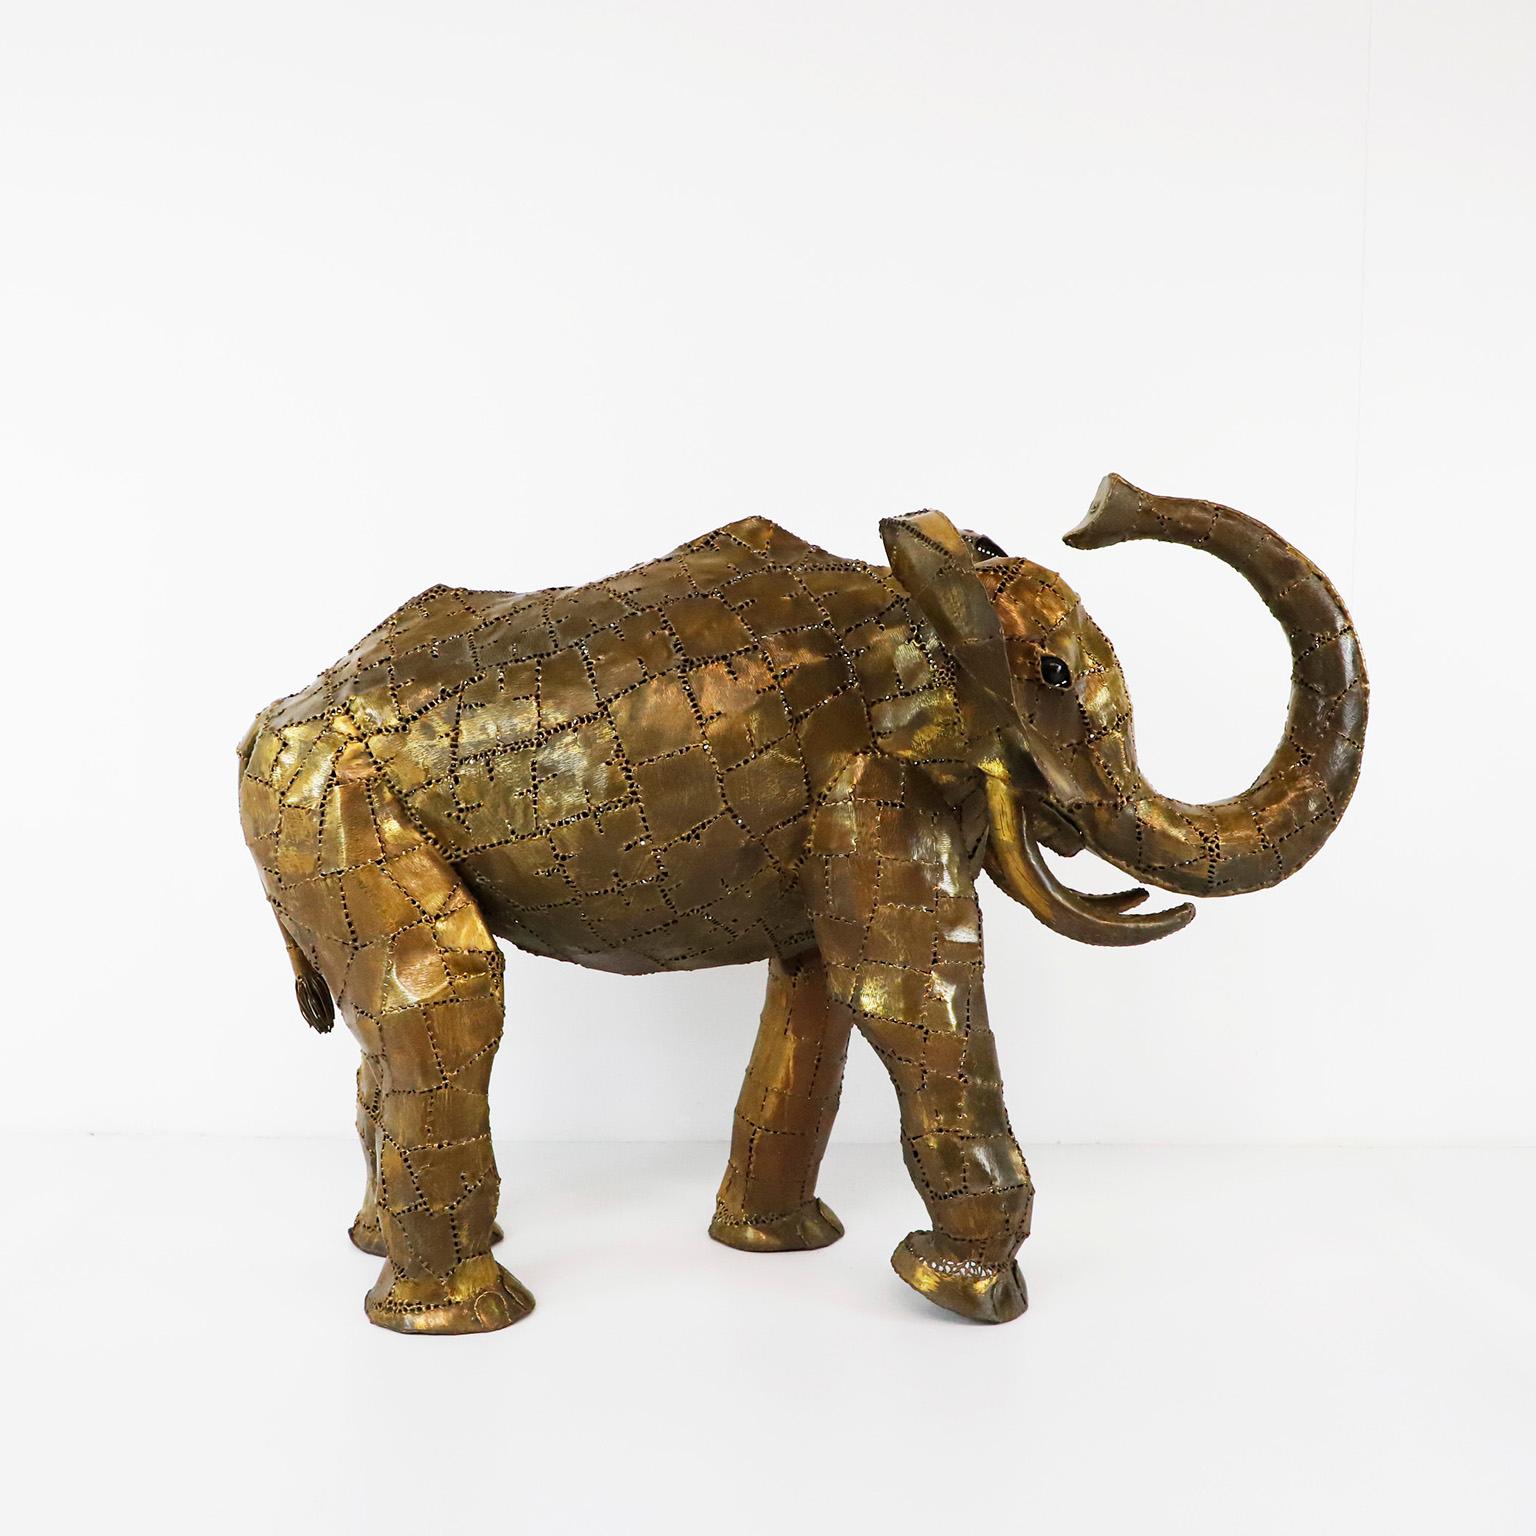 Circa 1960, Nous vous proposons cette figurine d'éléphant brutaliste de grande taille dans le style de Sergio Bustamante.

Sergio Bustamante est un artiste et sculpteur mexicain. Il a commencé par des peintures et des figures en papier mâché,